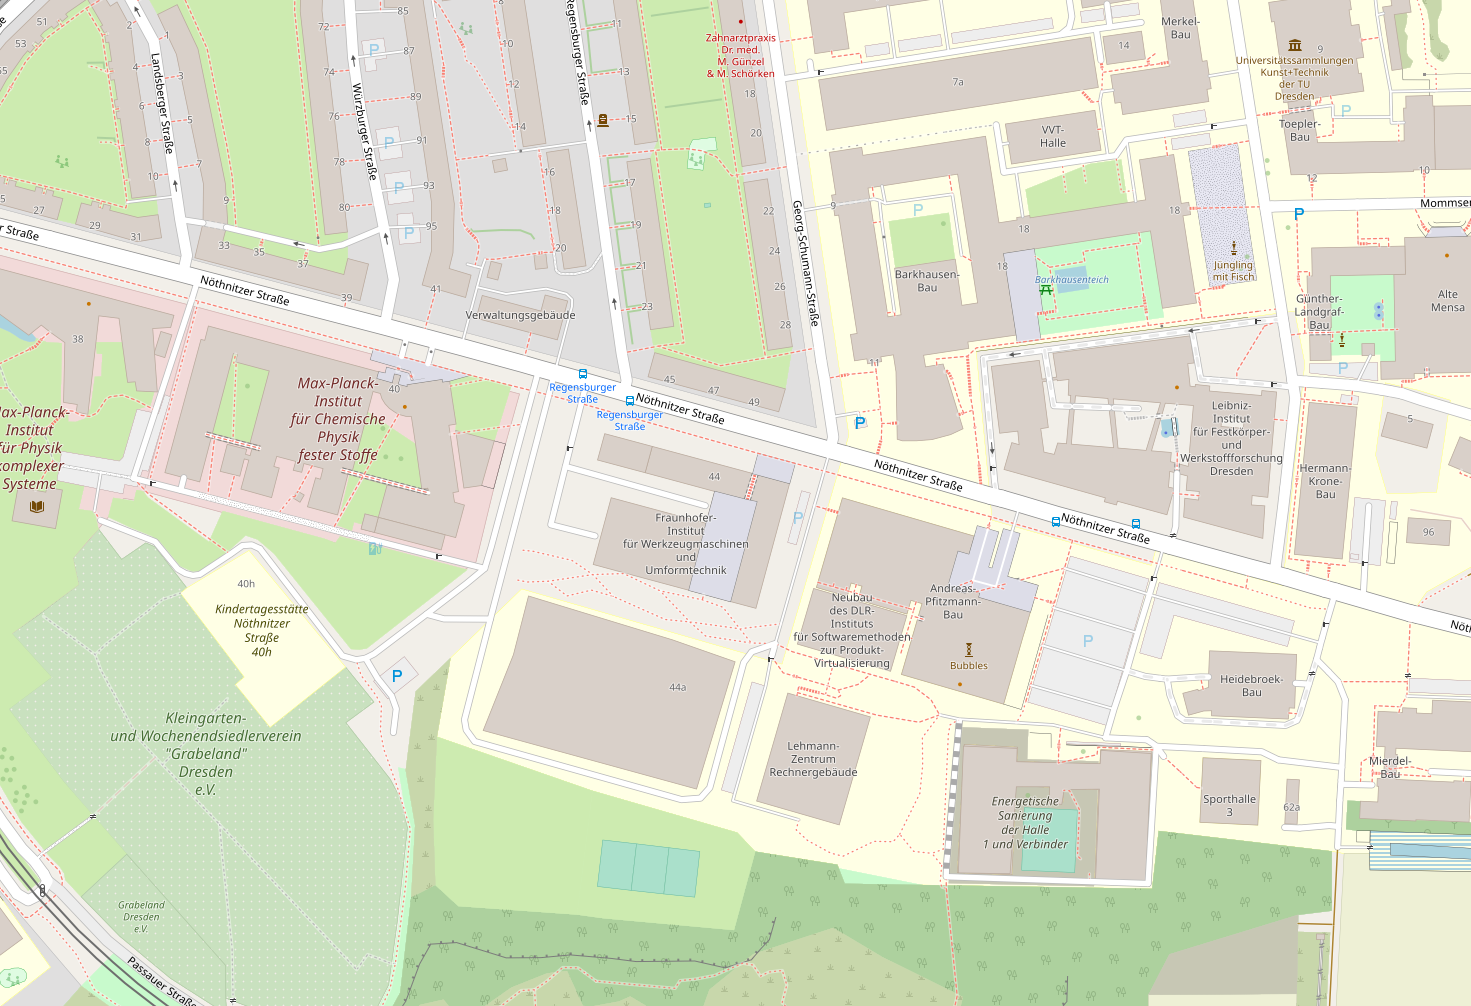 Ausschnitt einer OSM-Karte im Bereich der Nöthnitzerstraße in Dresden. Der Andreas-Pfitzmann-Bau (Besuchsanschrift) befindet sich etwa mittig in der unteren Hälfte des Ausschnitts